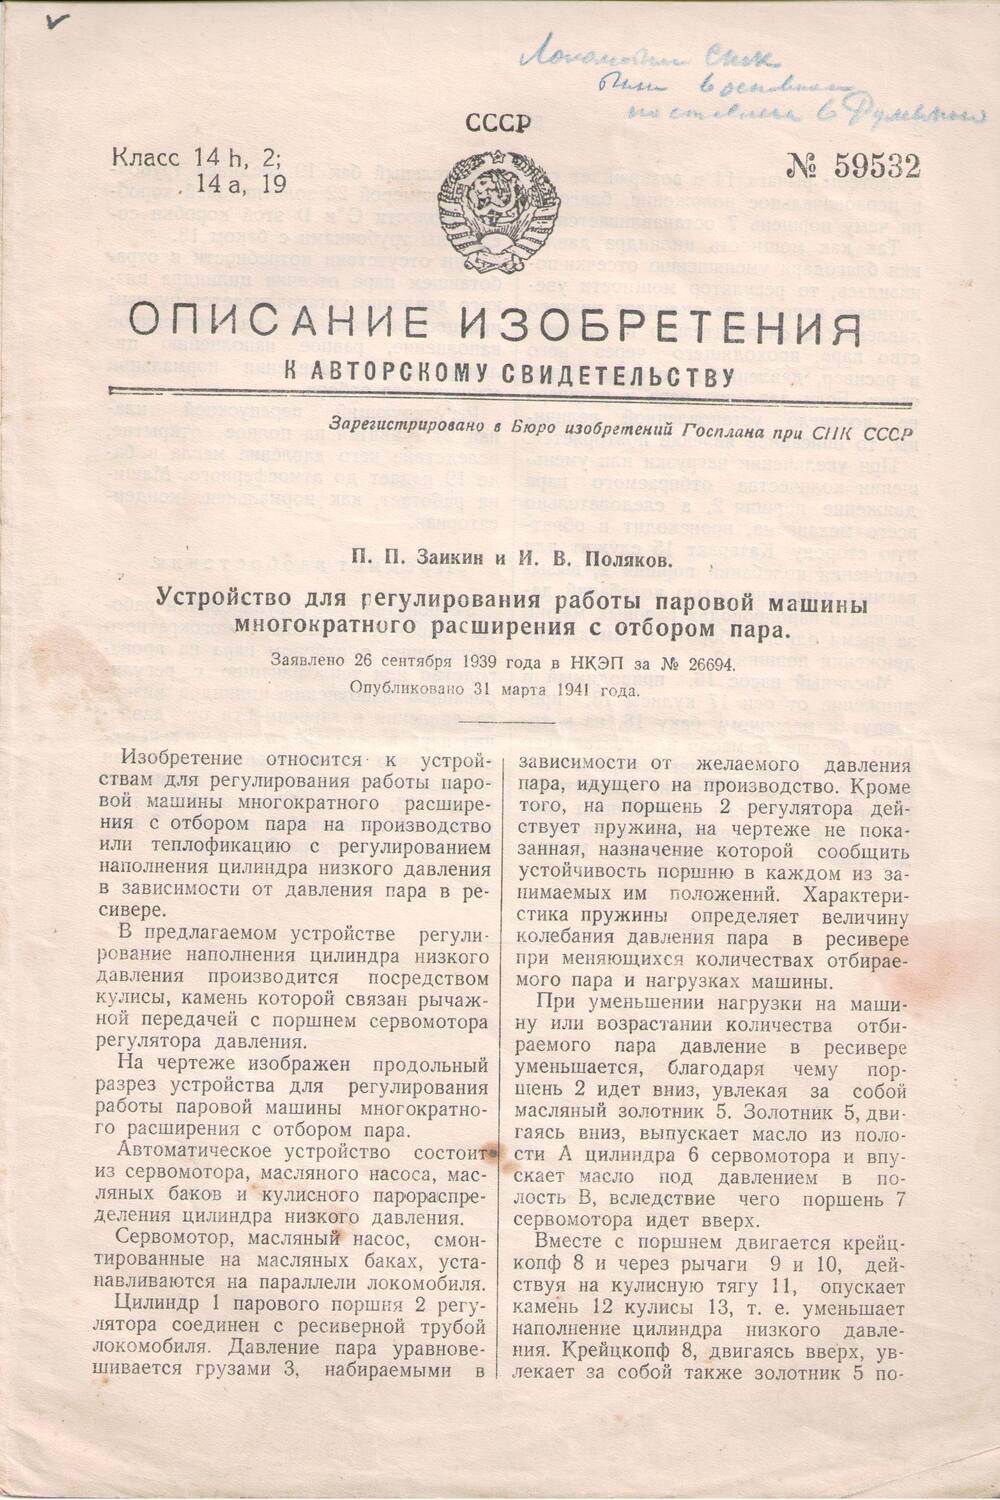 Описание изобретения к авторскому свидетельству № 26694 от 26.09.1939 г.